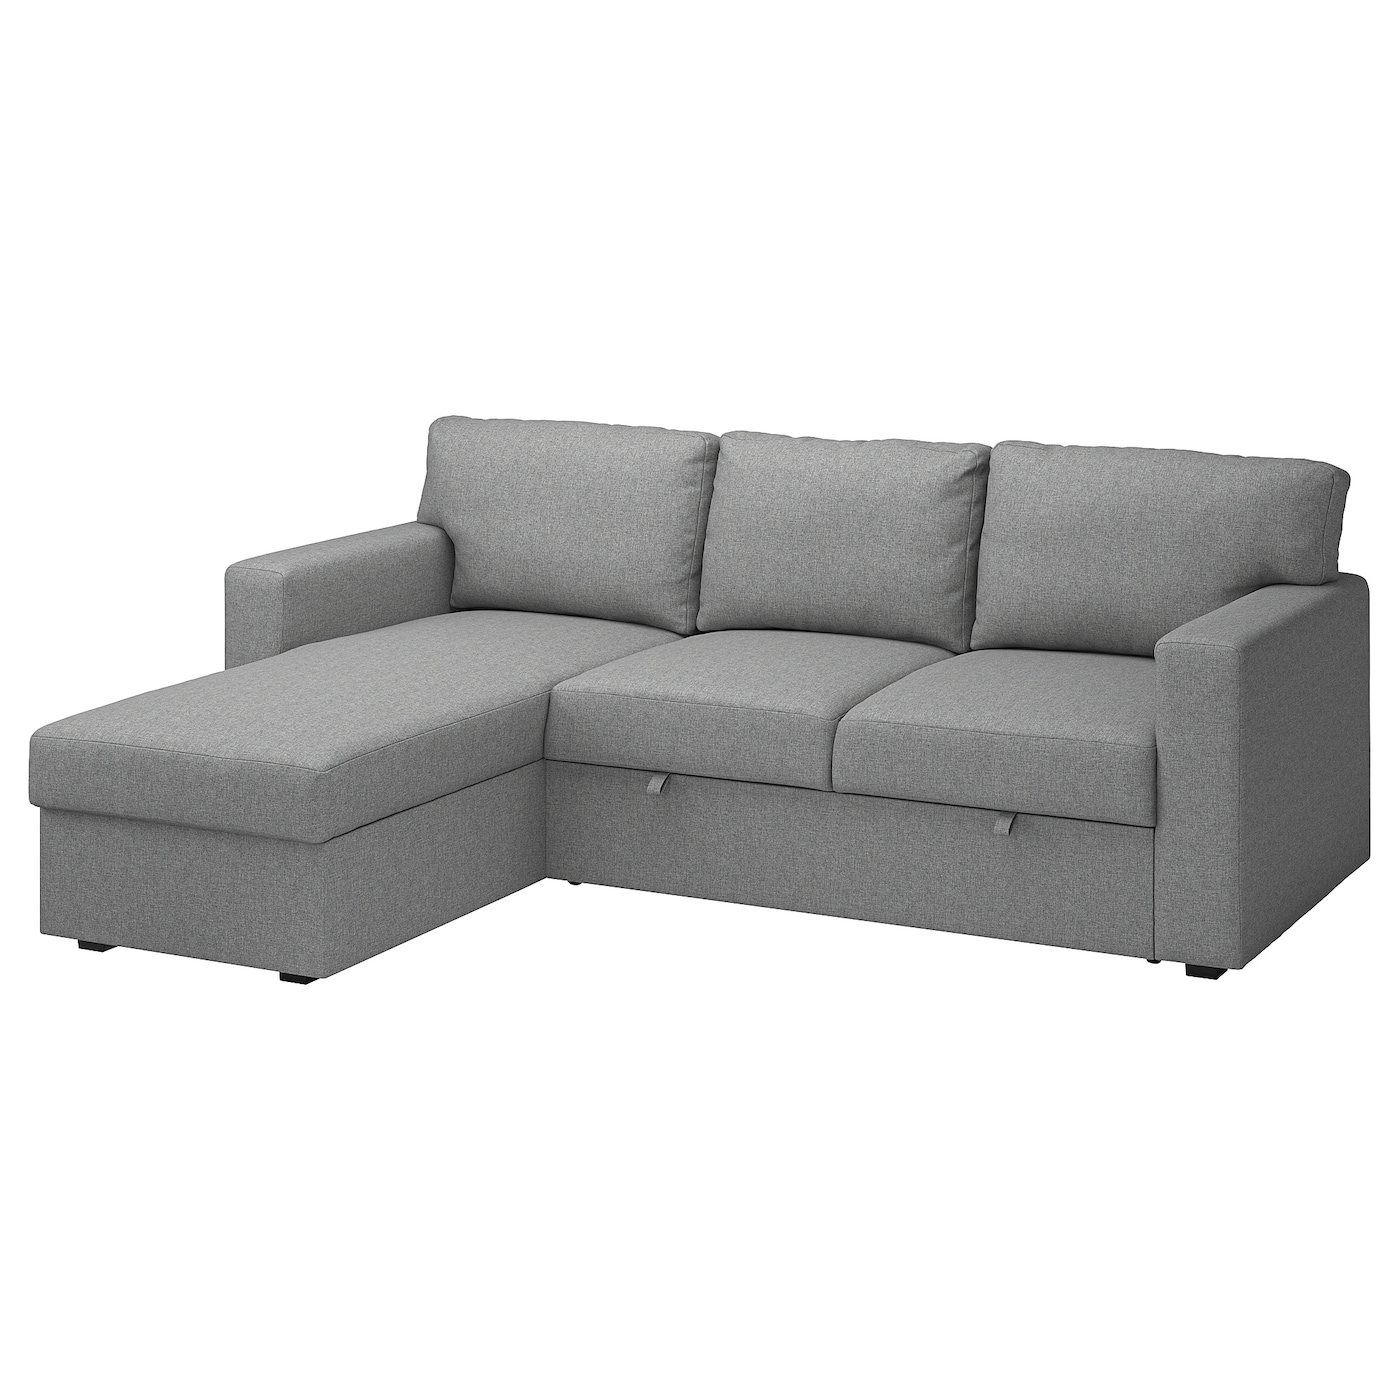 БОРСЛОВ 3-местный диван-кровать + диван, Тибблби бежевый/серый BÅRSLÖV IKEA диван кровать лора тд 328